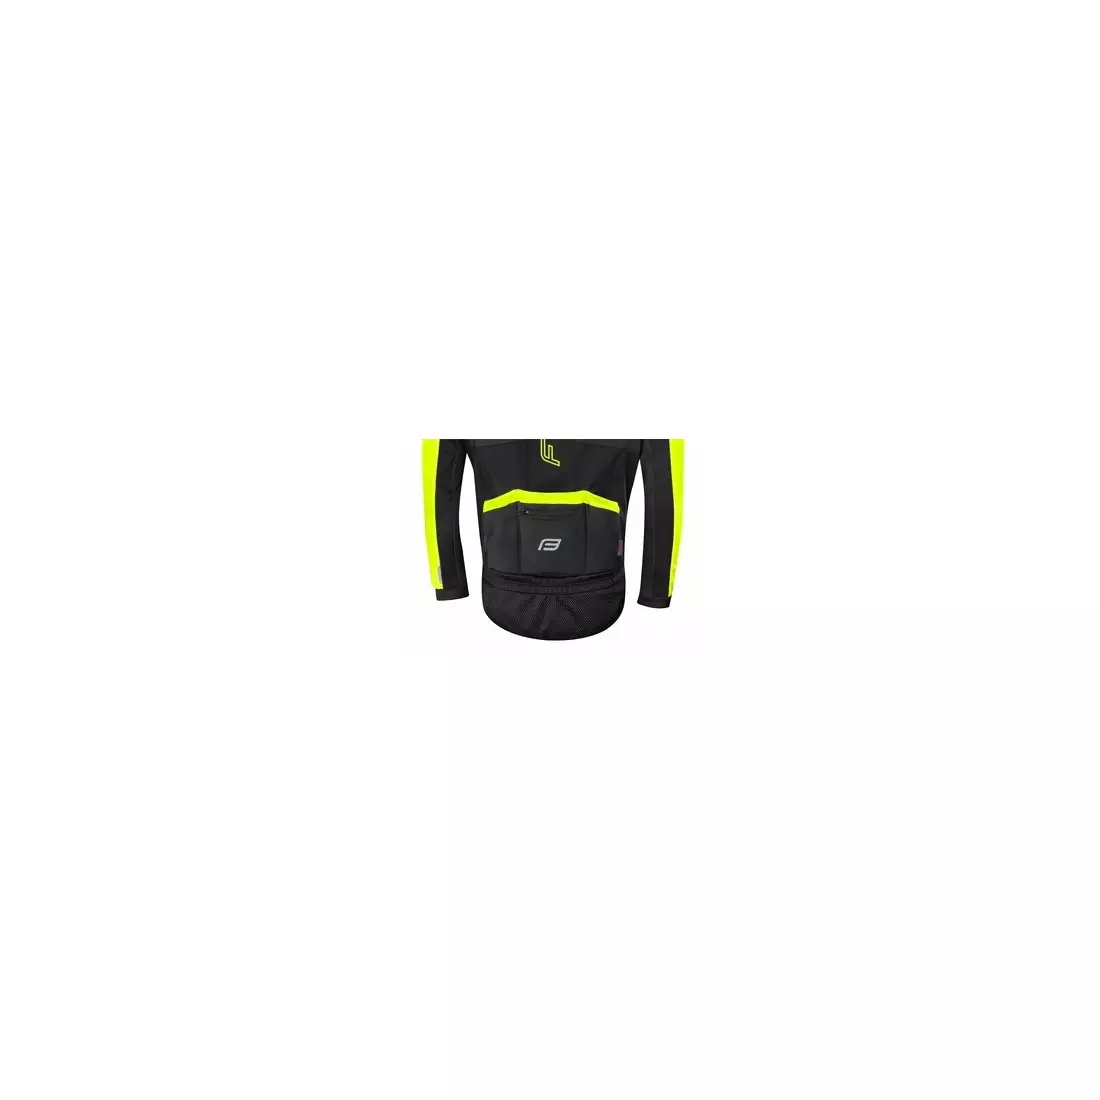 FORCE X100 téli kerékpáros kabát, fekete fluor sárga 899860